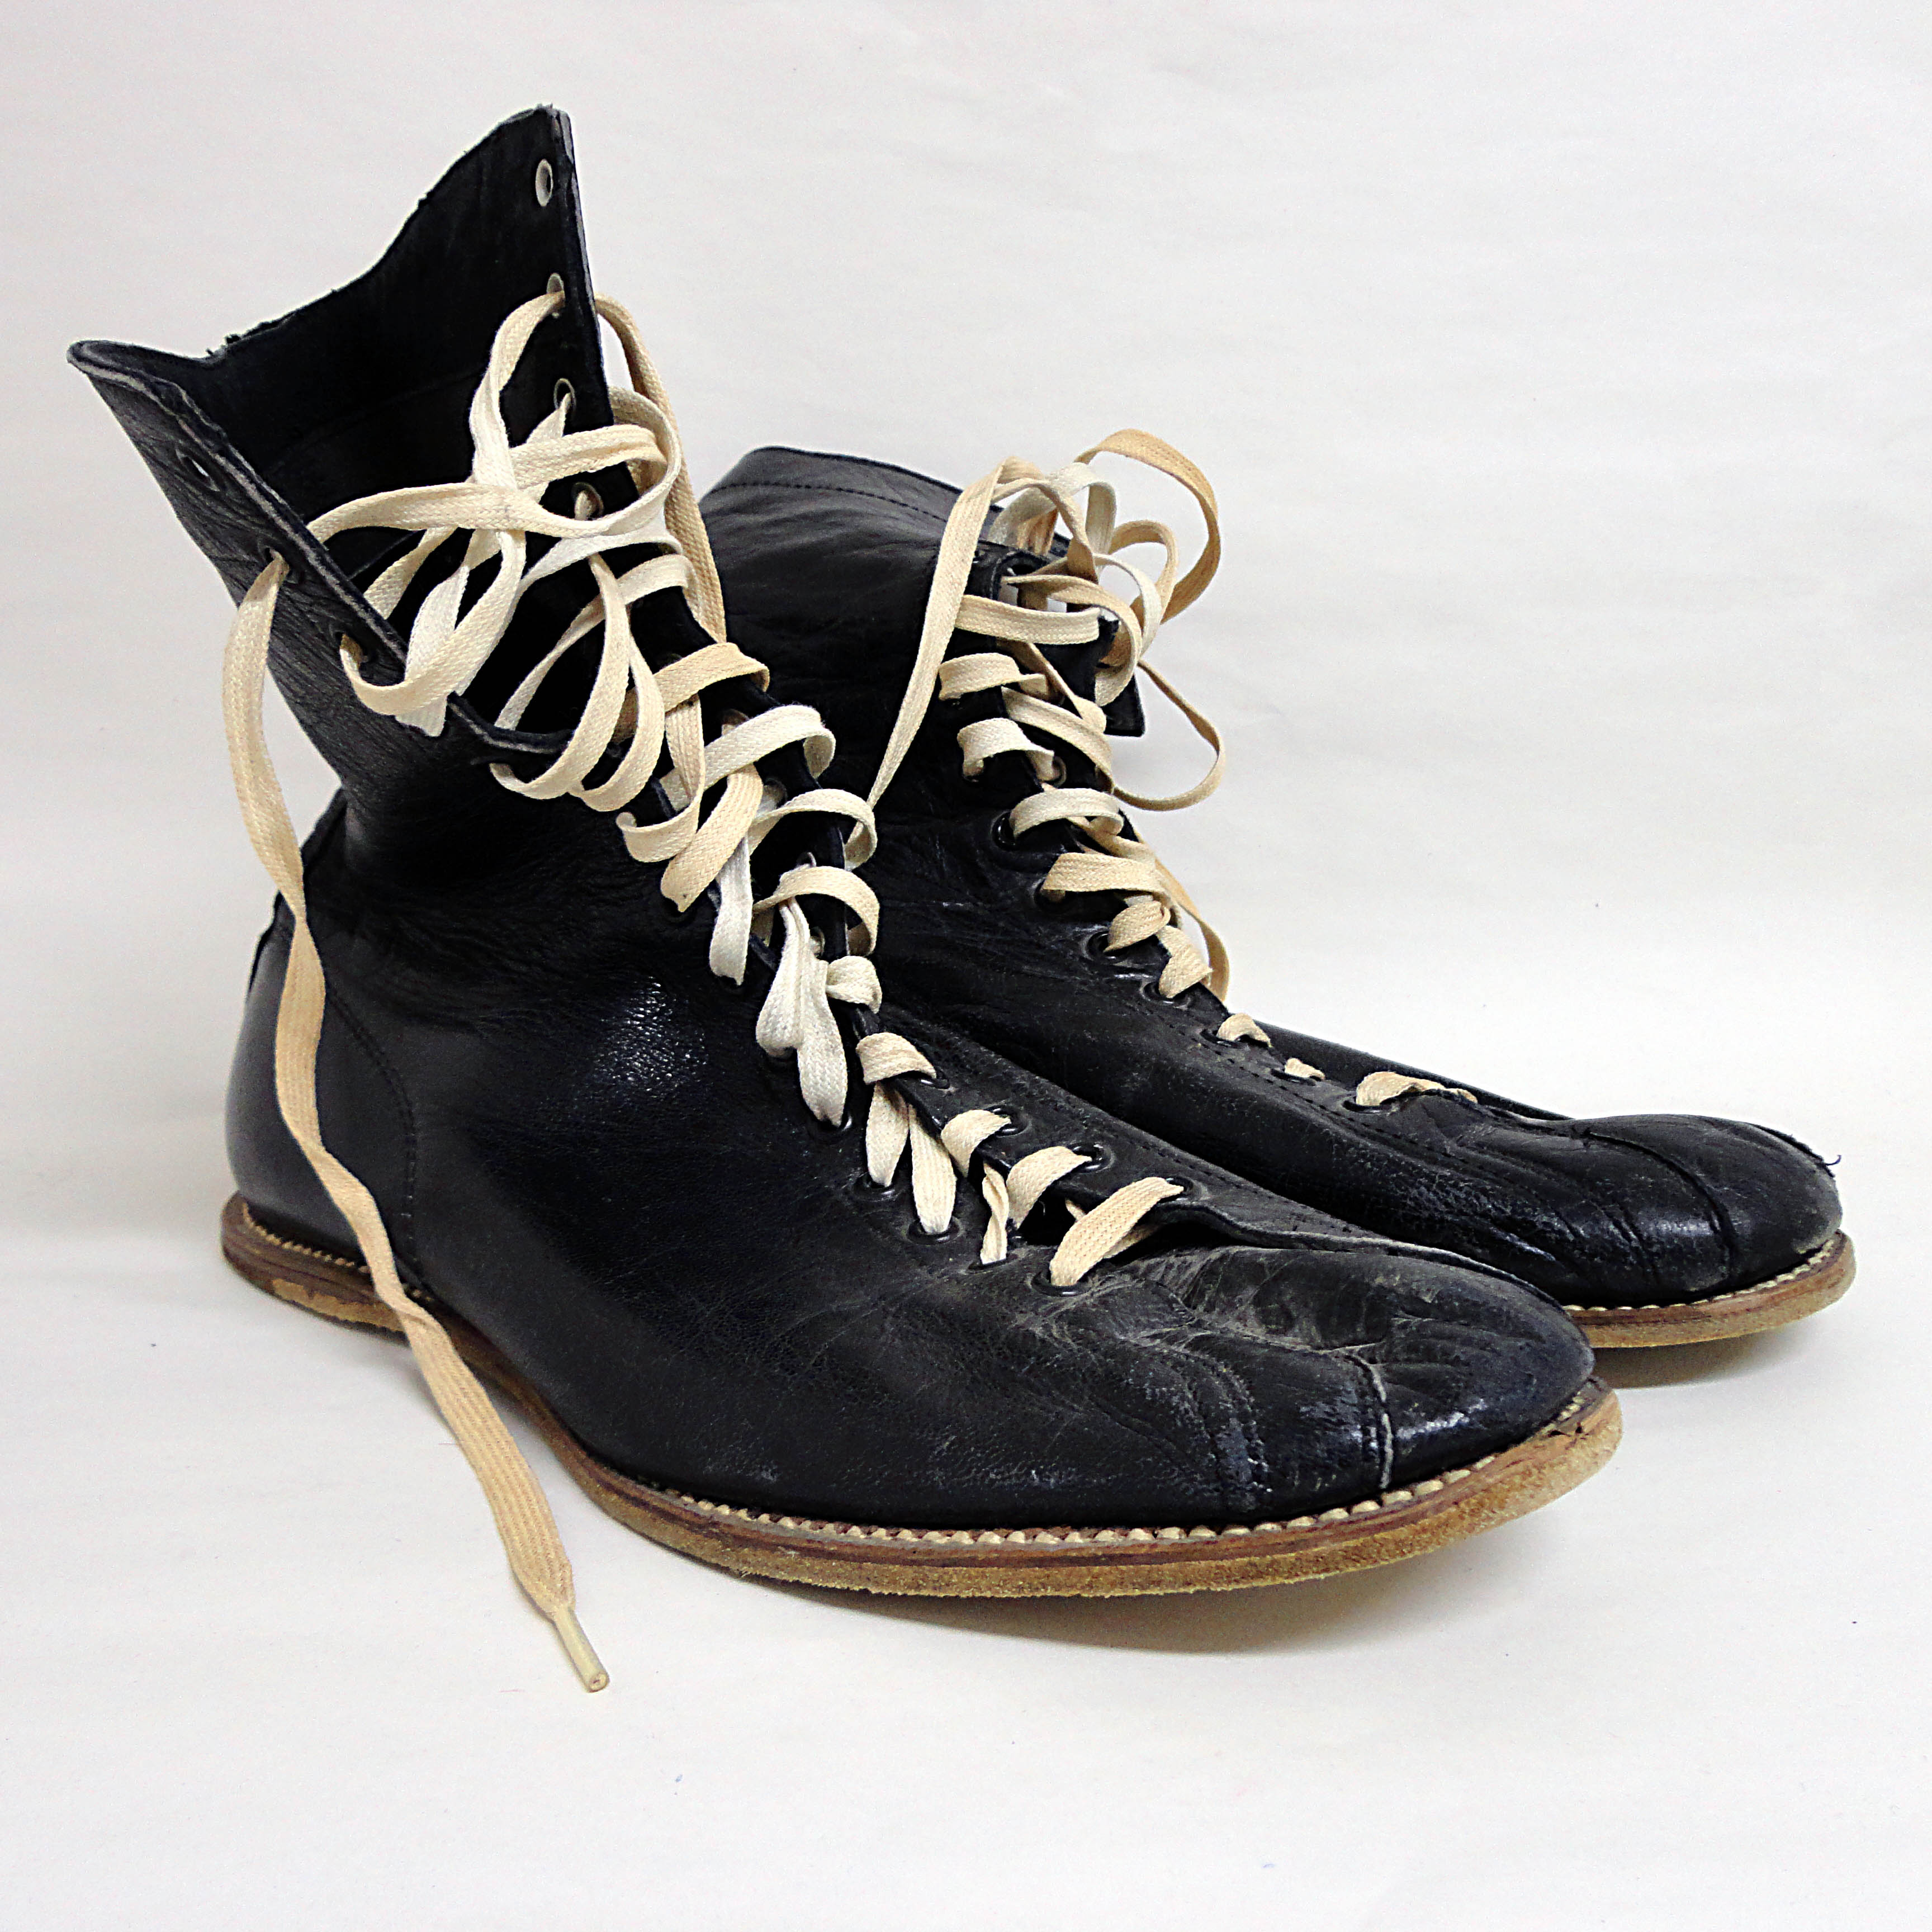 Boxing Shoes Vintage Boxing Head Quarter | estudioespositoymiguel.com.ar